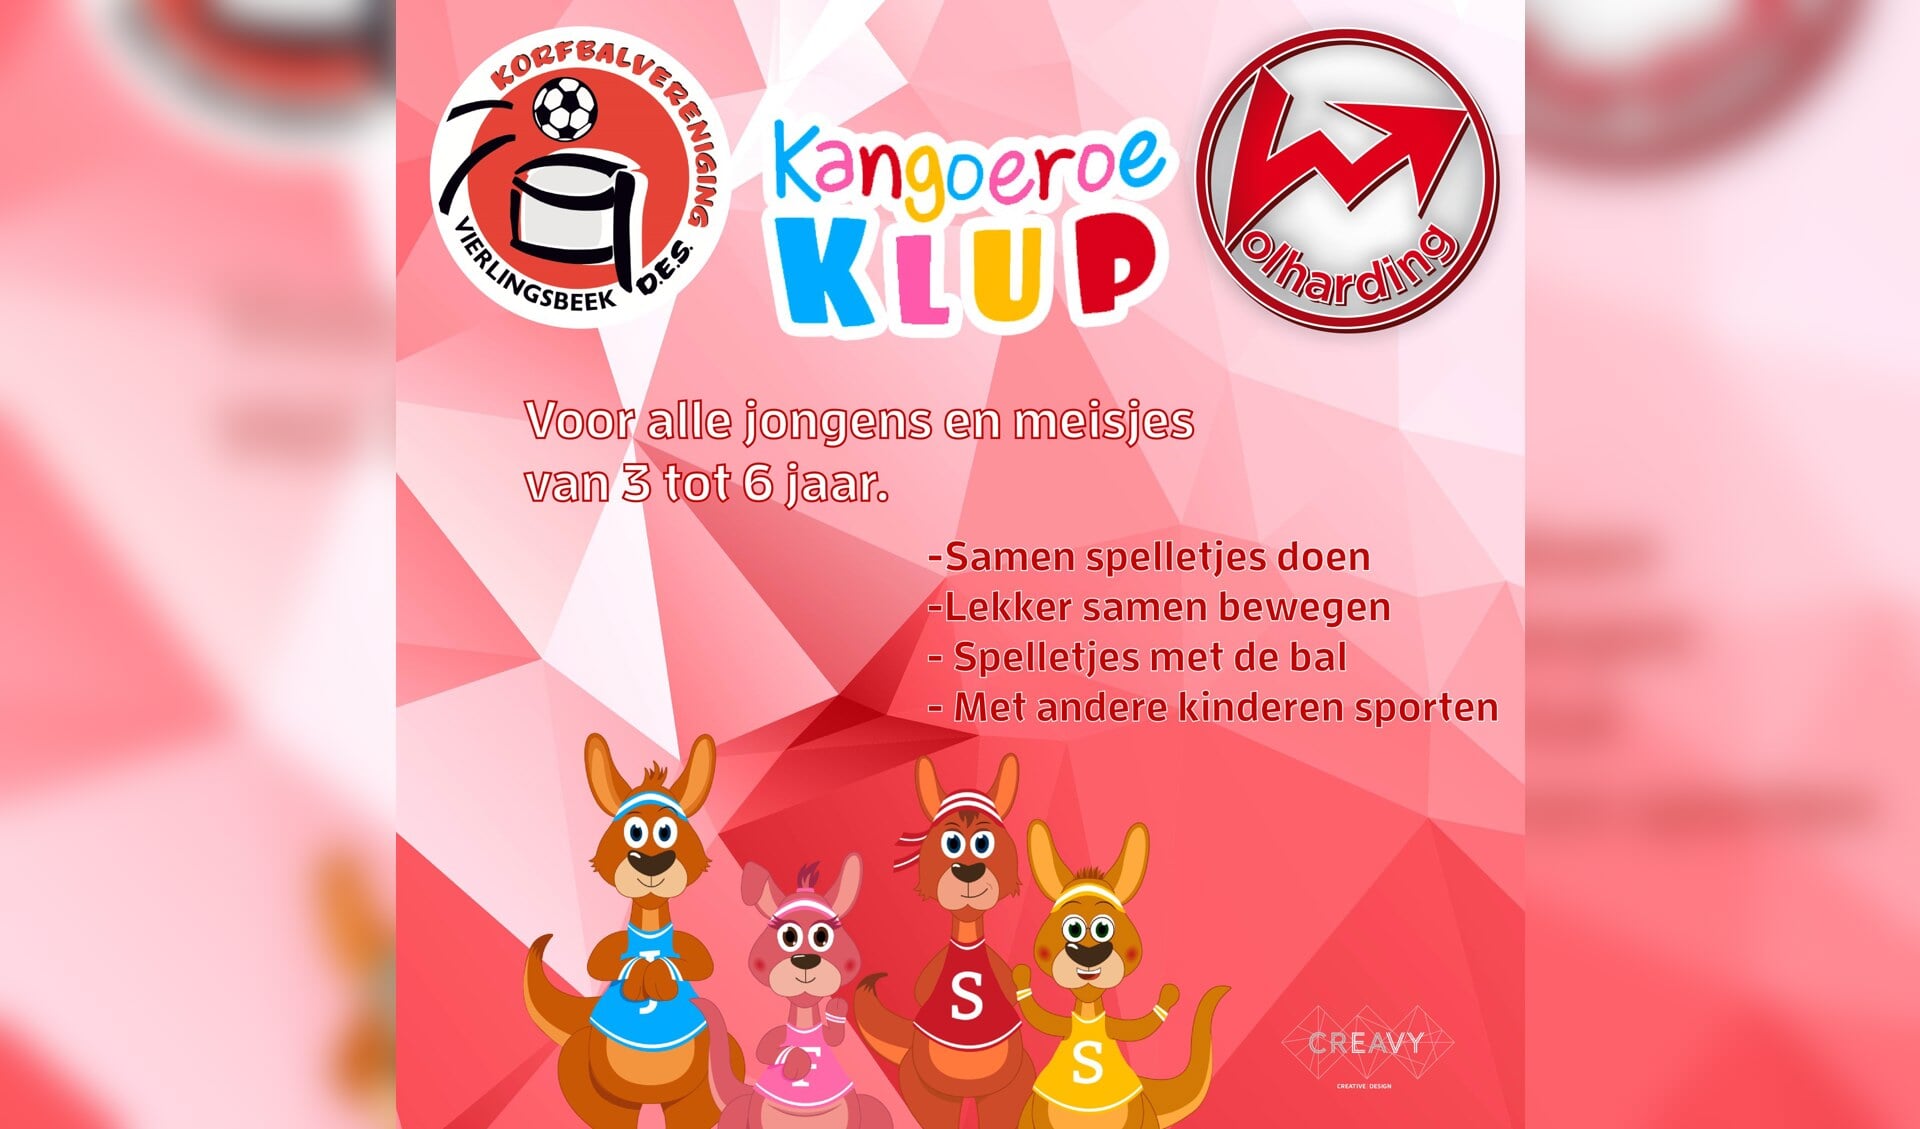 Jongens en meisjes van 3 tot 6 jaar zijn welkom bij de Kangoeroe Klup. 